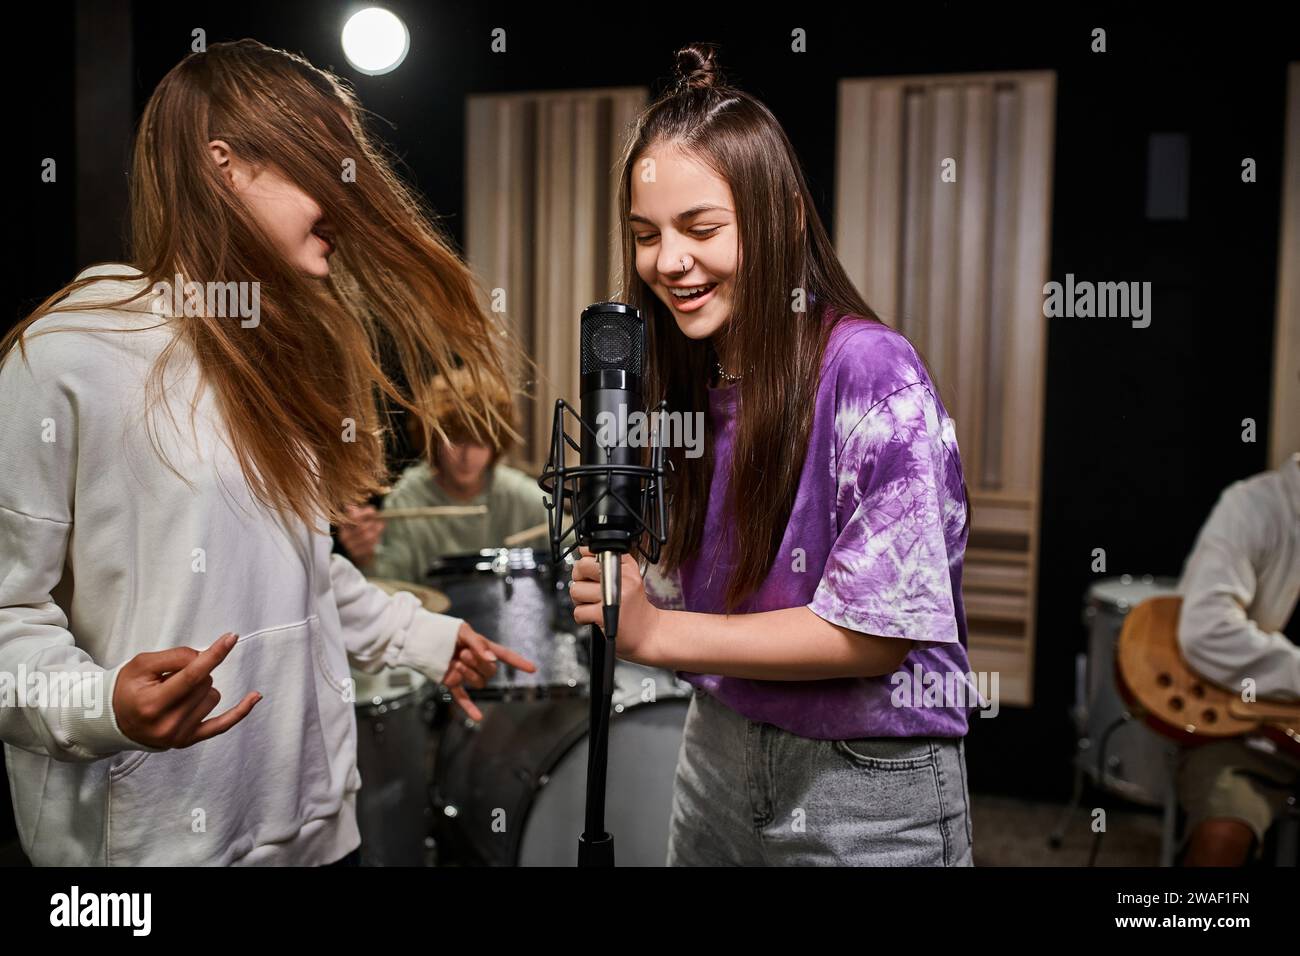 Entzückende, fröhliche Teenager-Mädchen singen und Rock-Zeichen zeigen, während Jungen verschiedene Instrumente spielen Stockfoto